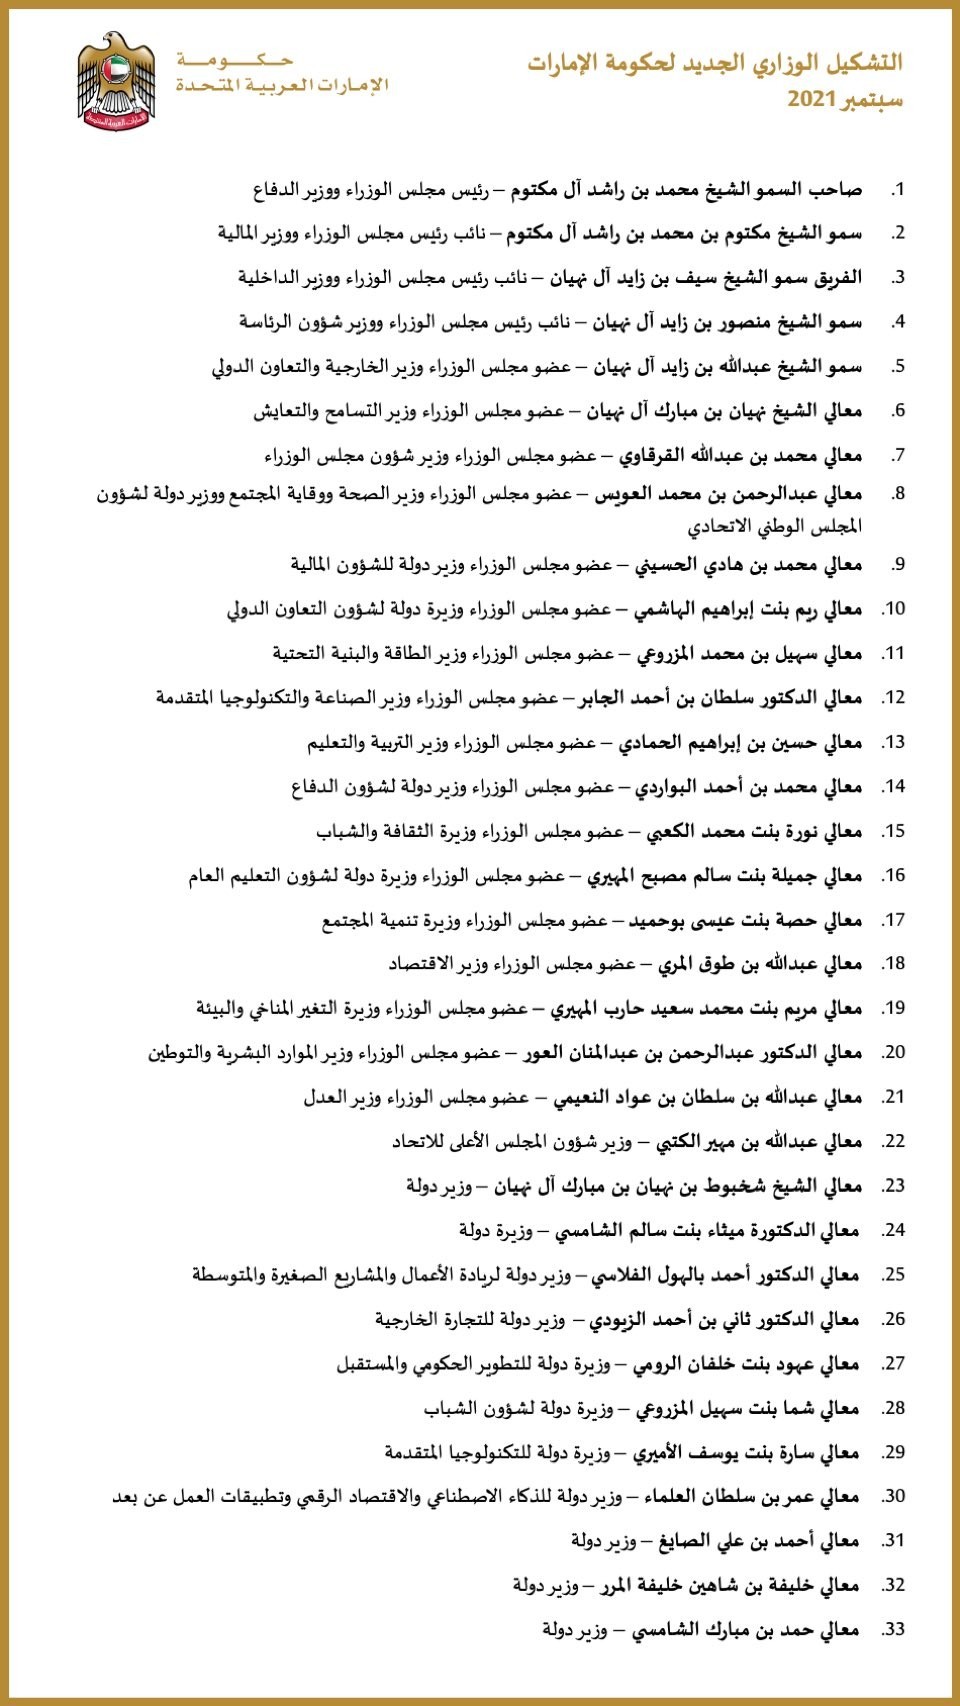 طالع أسماء أعضاء مجلس الوزراء الاماراتي الجدد